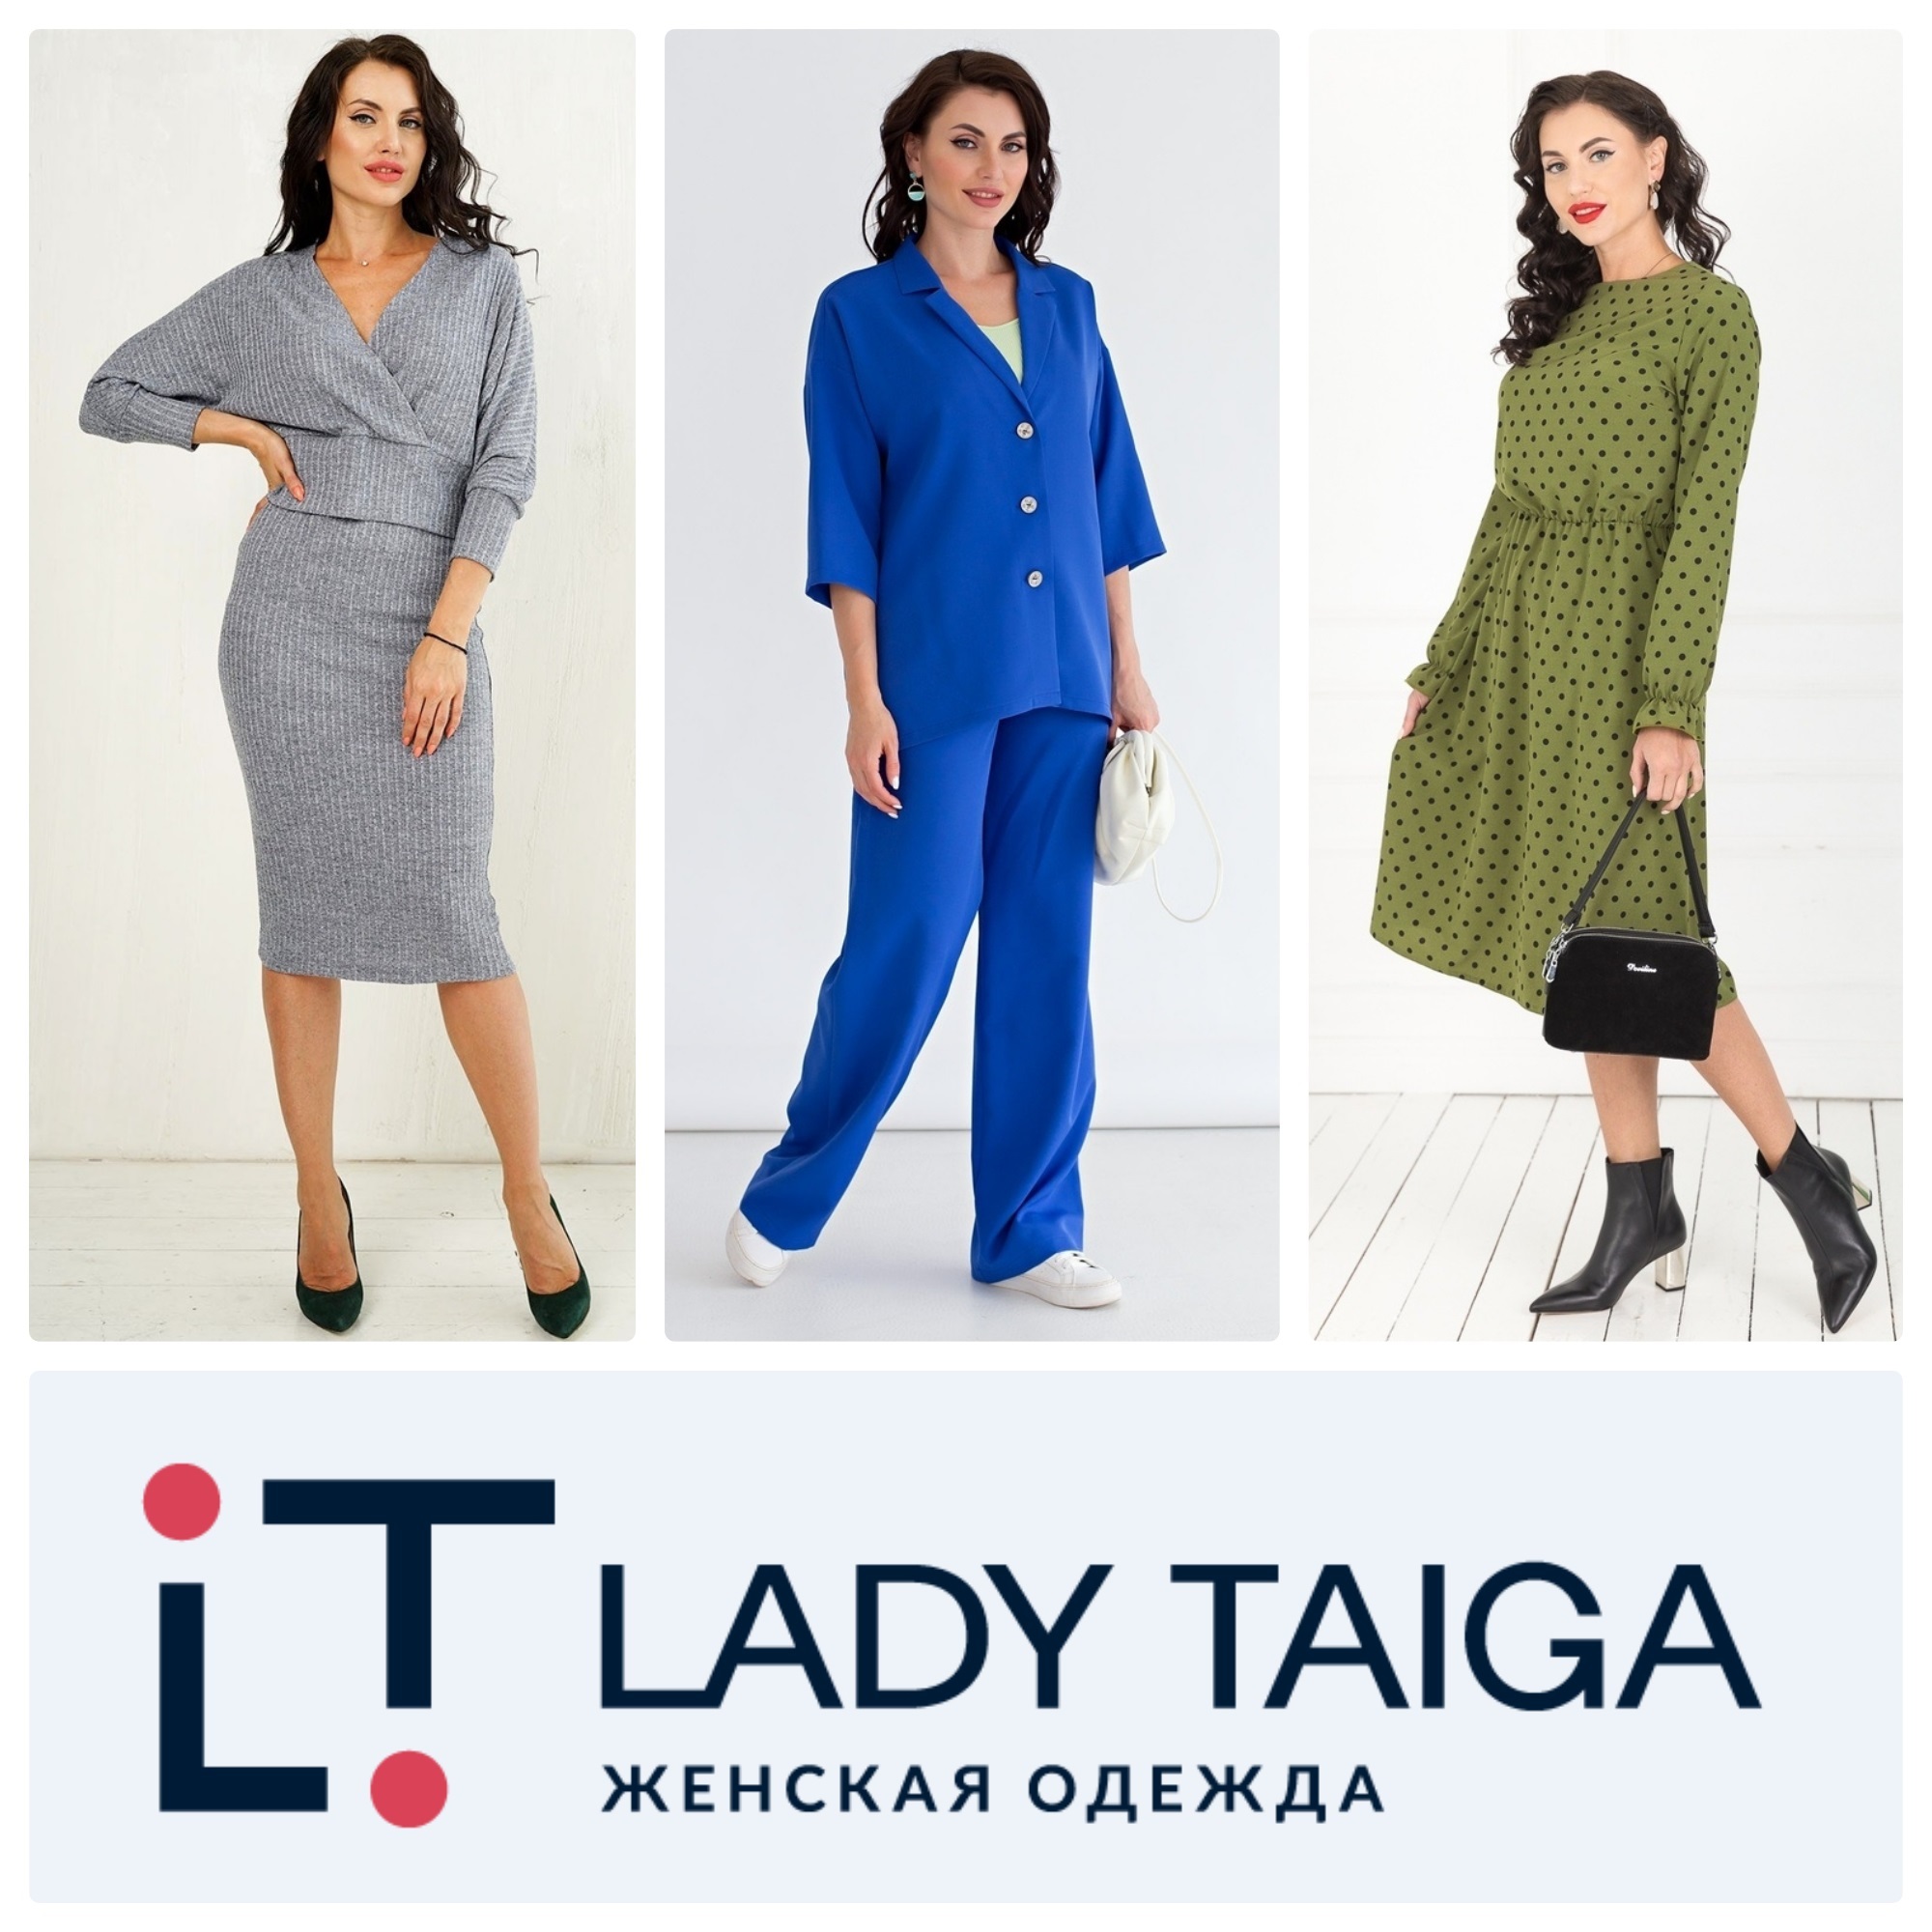 Lady Taiga женская одежда